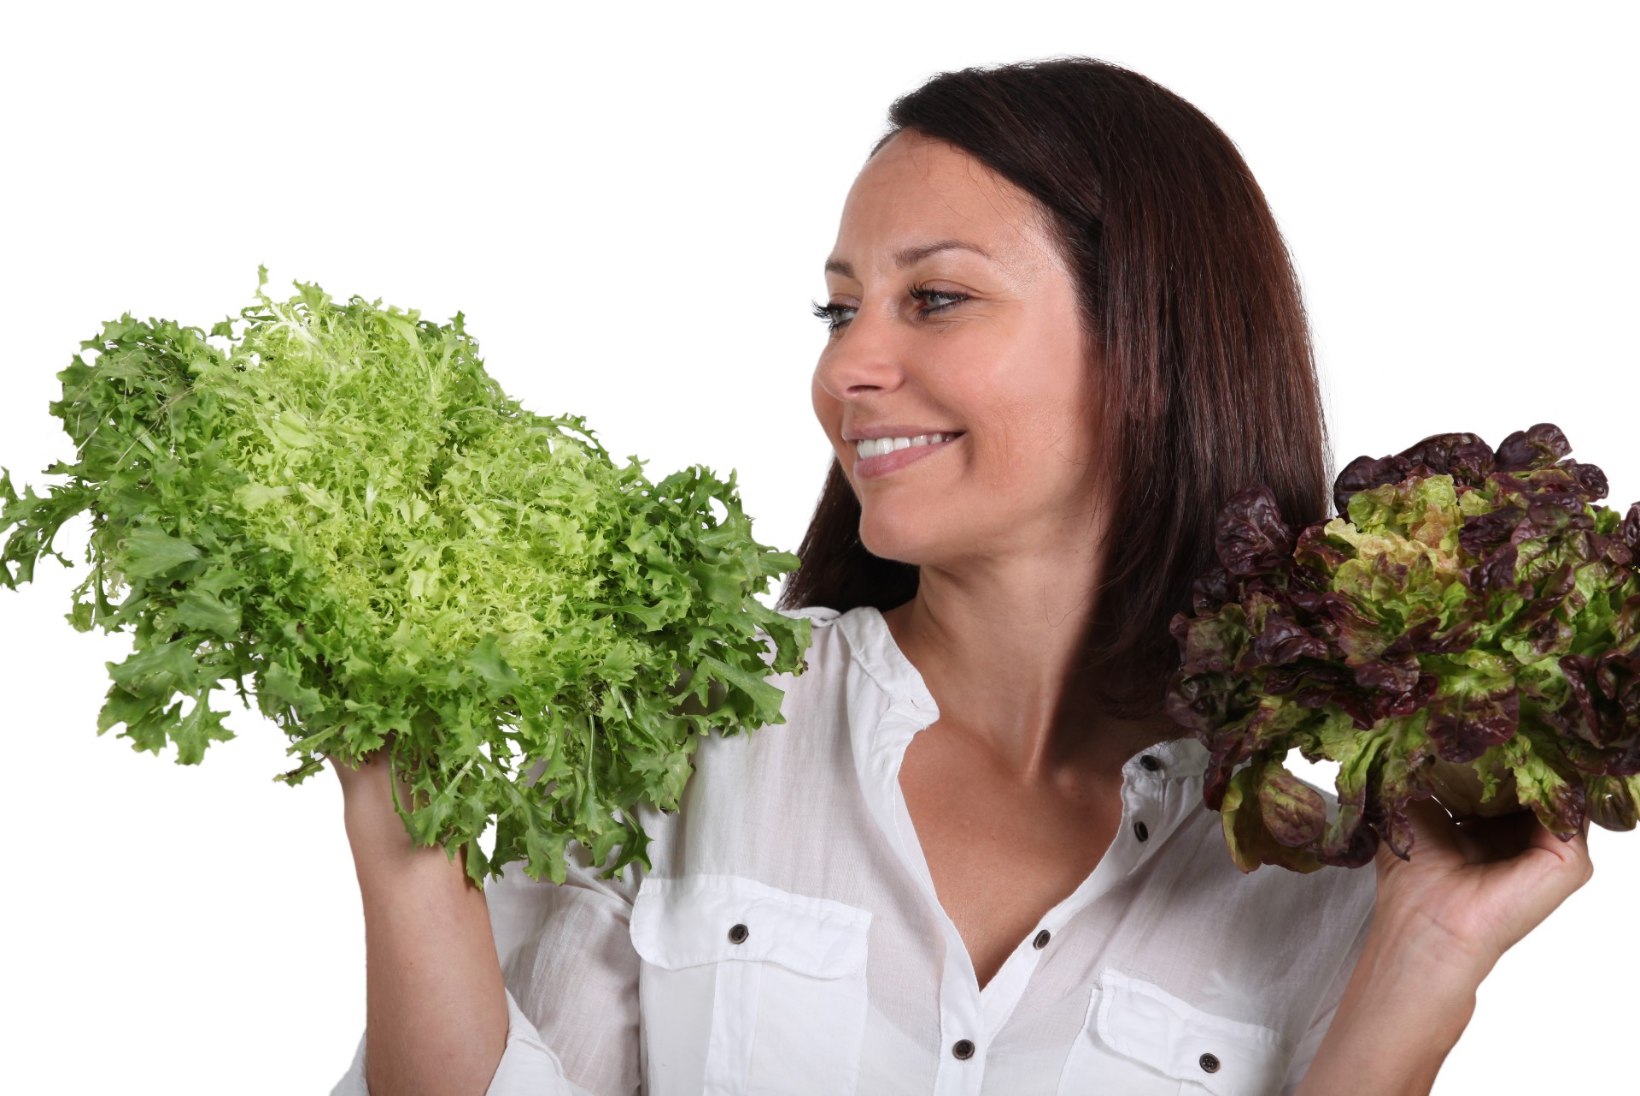 Rohelised lehtköögiviljad vähendavad glaukoomiriski